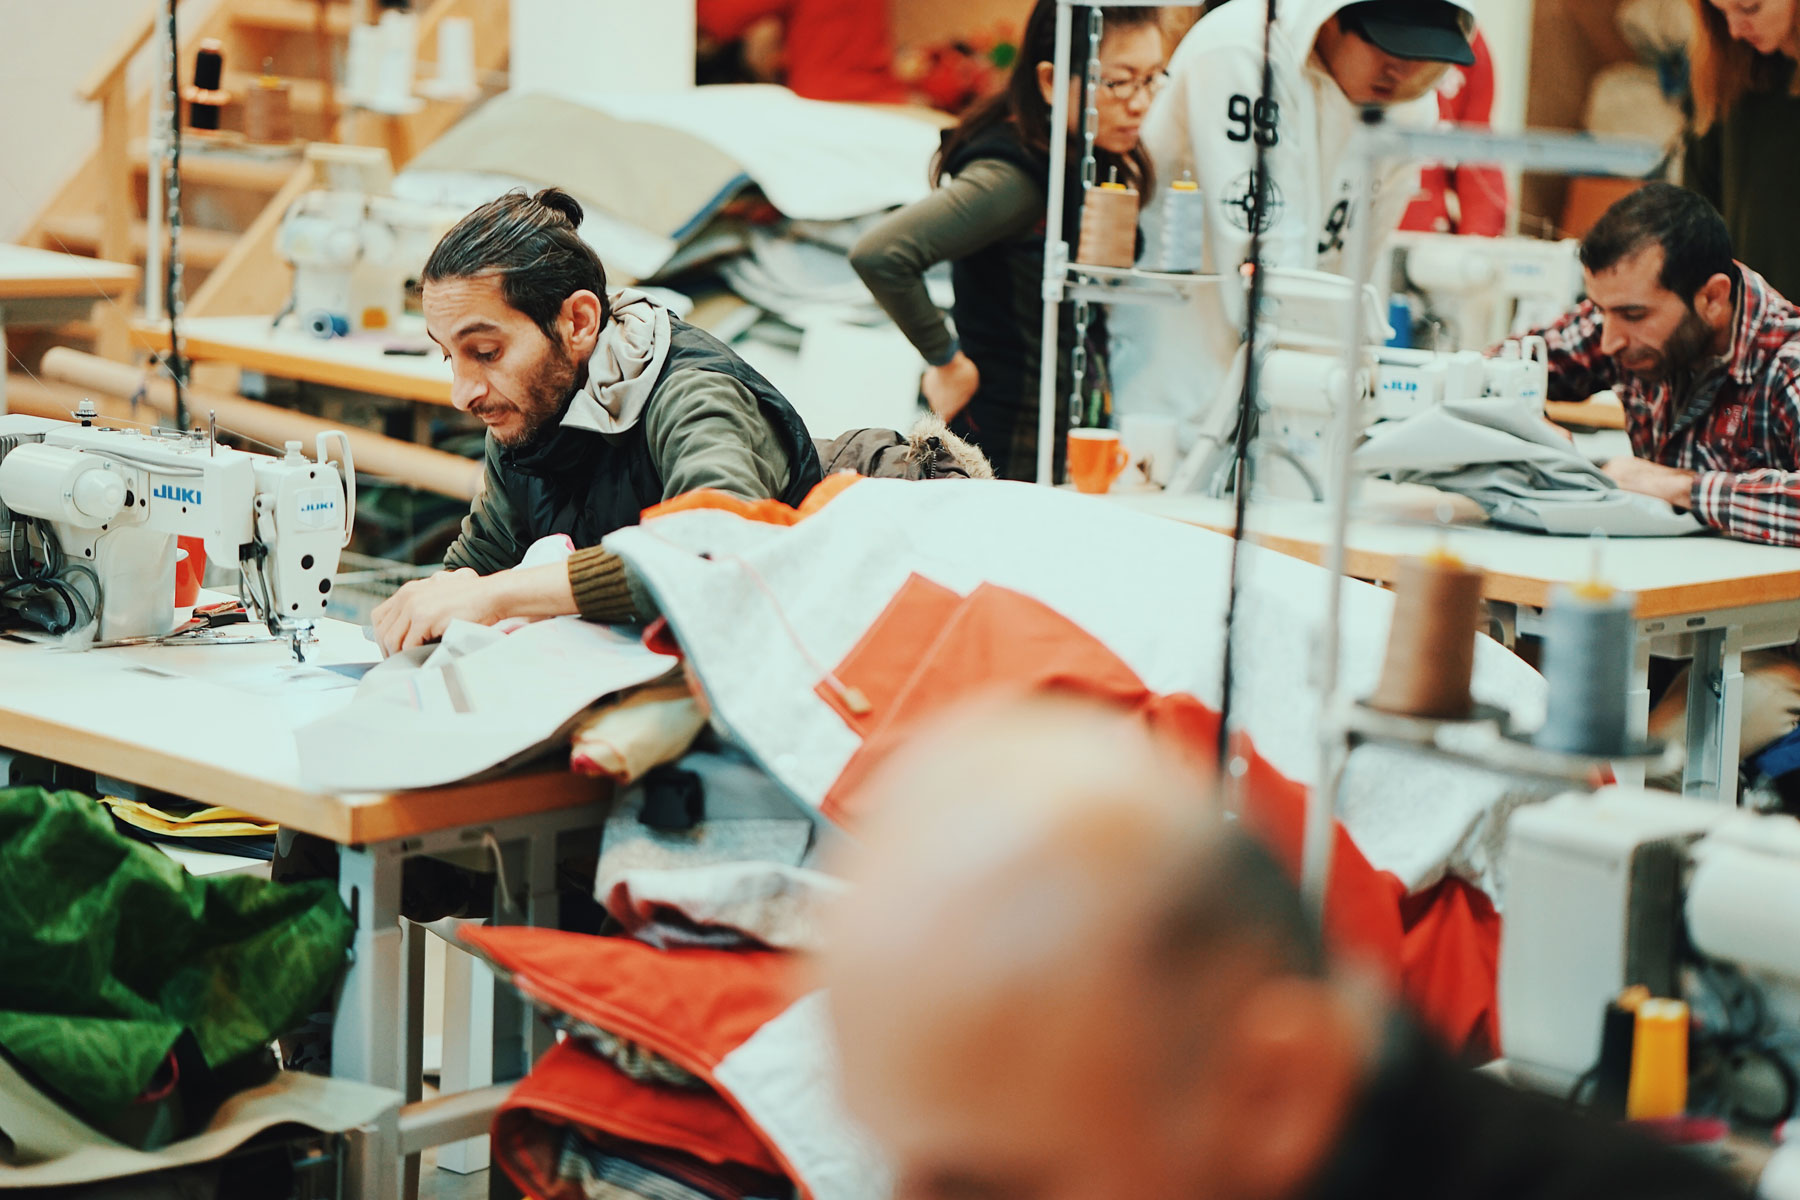 Een sociale kledingfabriek waar kleding wordt gemaakt onder ethisch verantwoorde arbeidsomstandigheden. De uitbreiding van de Sheltersuit organisatie komt na een verhuizing naar een nieuw kantoorgebouw en grotere productiefaciliteit binnen de stad Enschede in Nederland.